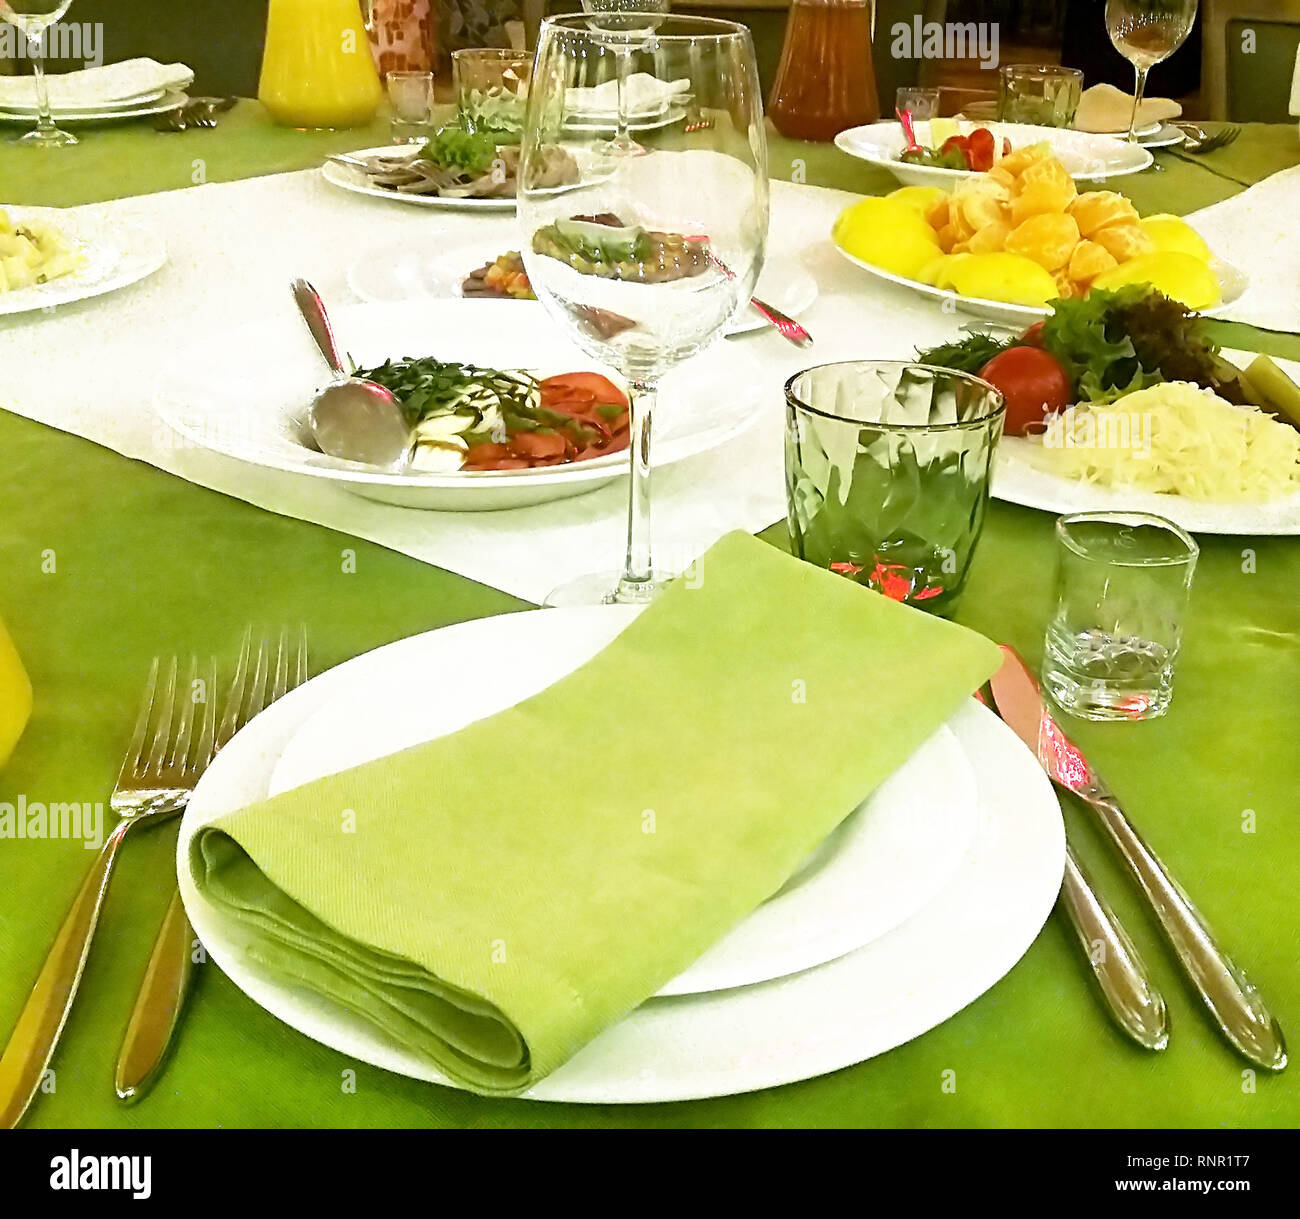 Bella tavola servita con verde e bianco di tovaglioli e tovaglia